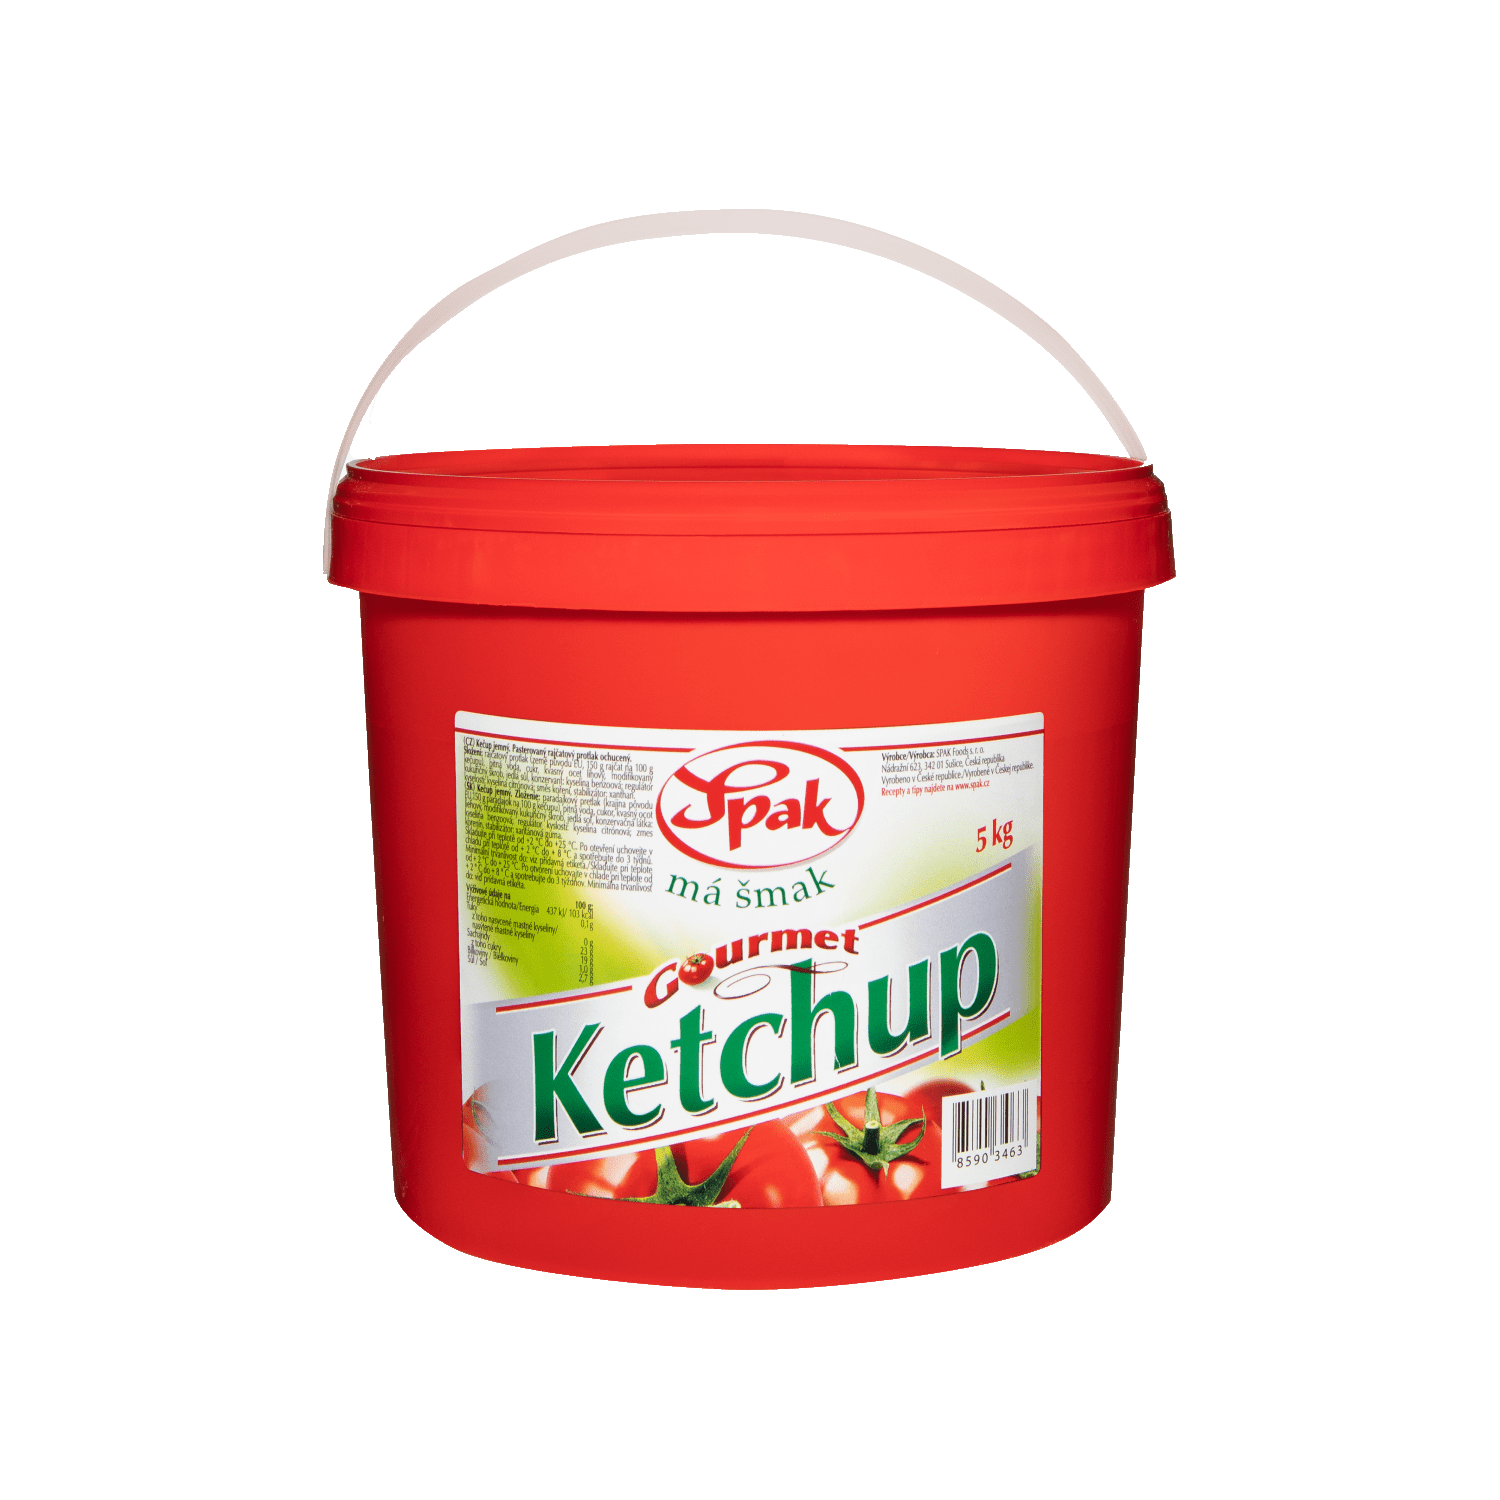 ketchup-5kg-2